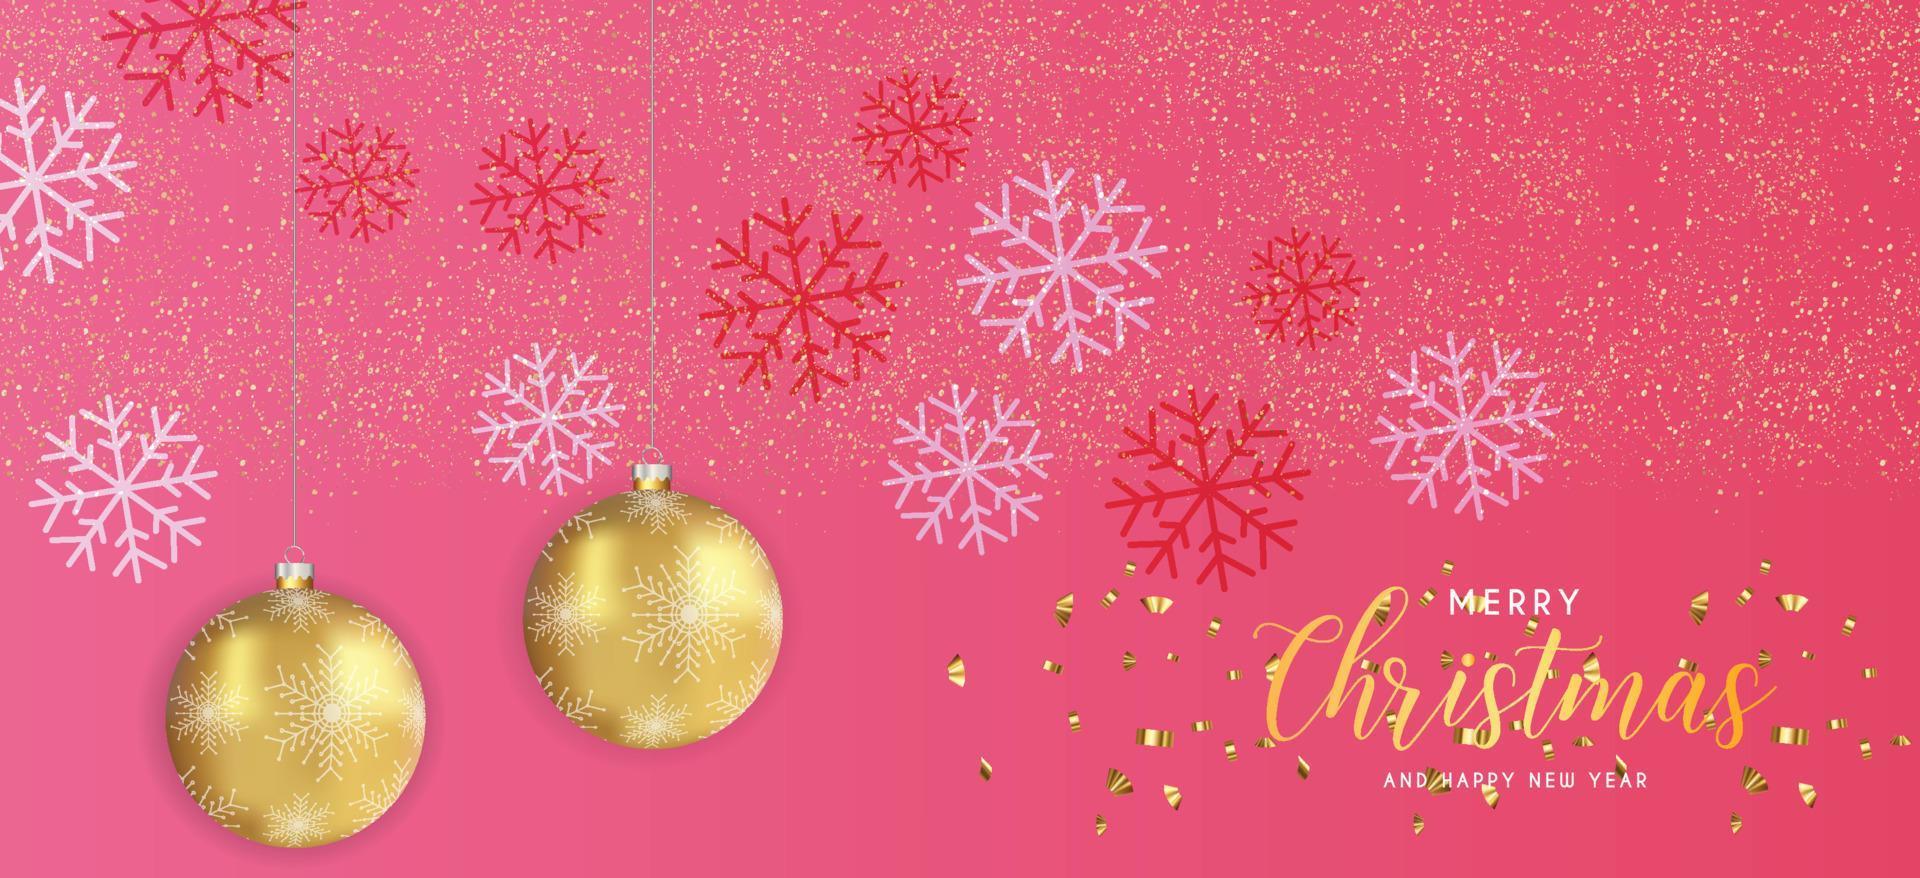 feestelijk Kerstmis roze achtergrond met gouden Kerstmis decoraties en gouden glinstert. vector illustratie.